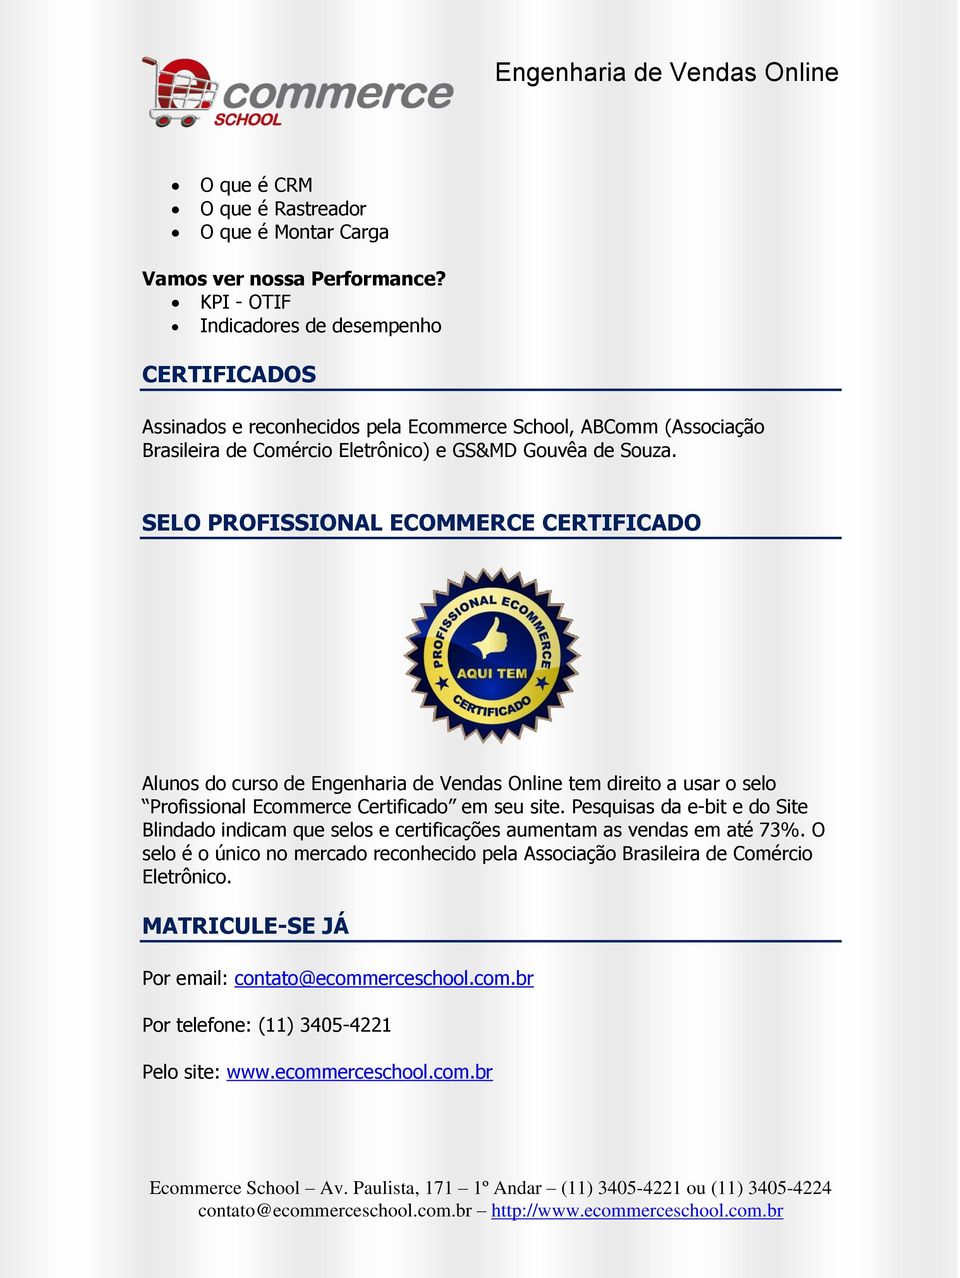 SELO PROFISSIONAL ECOMMERCE CERTIFICADO Alunos do curso de Engenharia de Vendas Online tem direito a usar o selo Profissional Ecommerce Certificado em seu site.